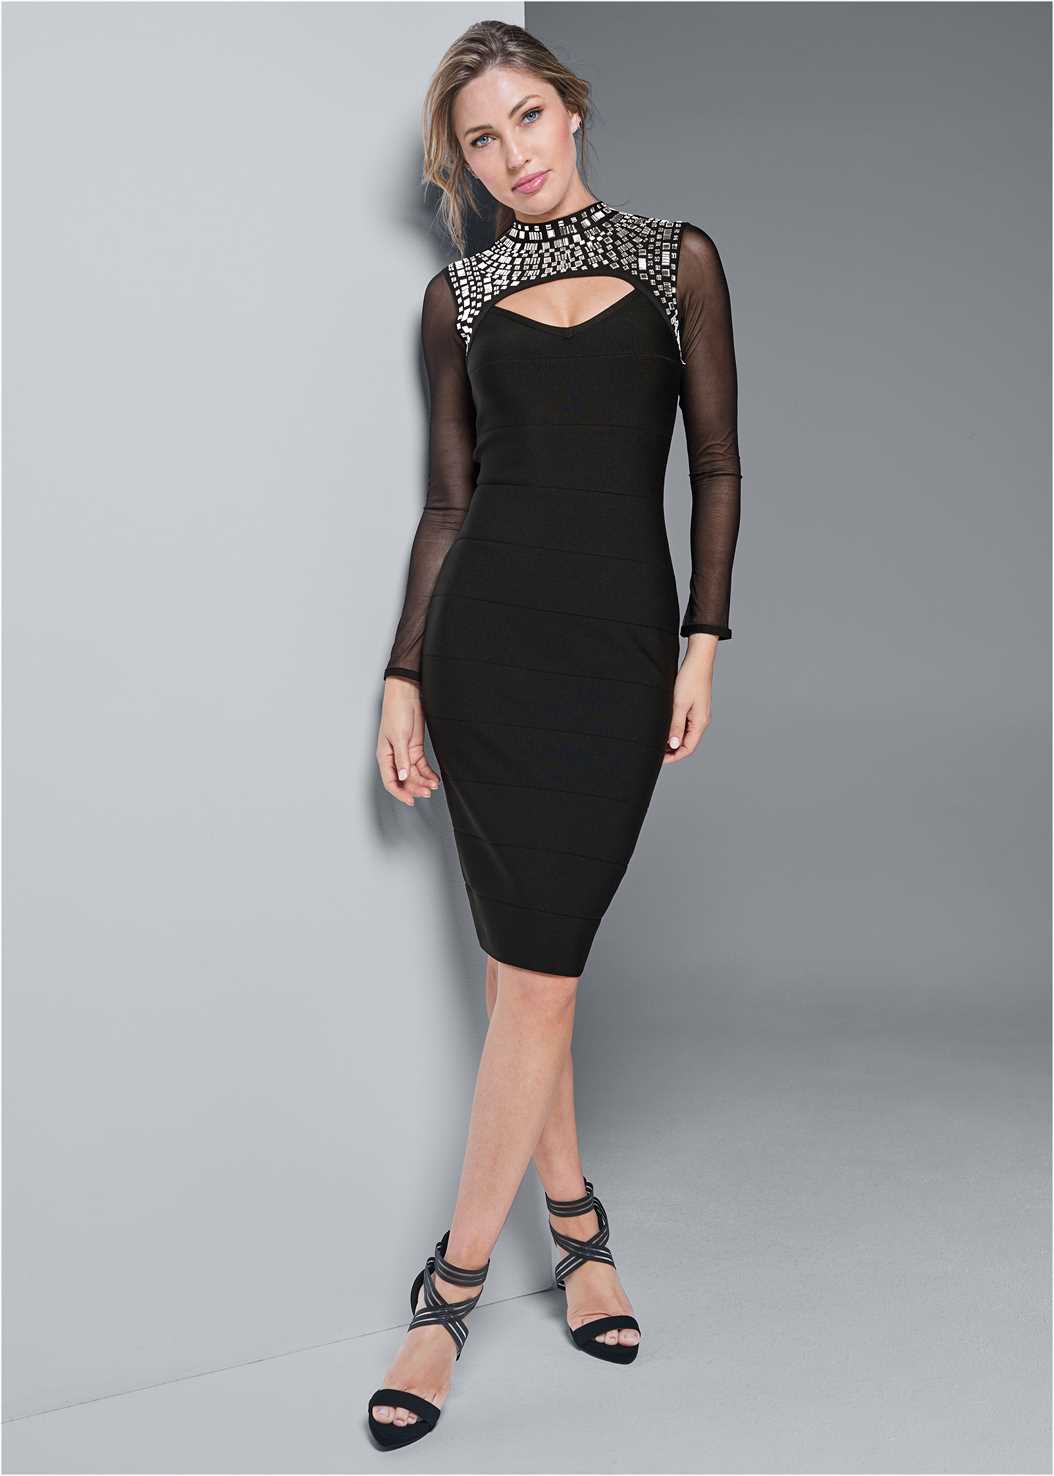 Embellished Bandage Dress in Black | VENUS